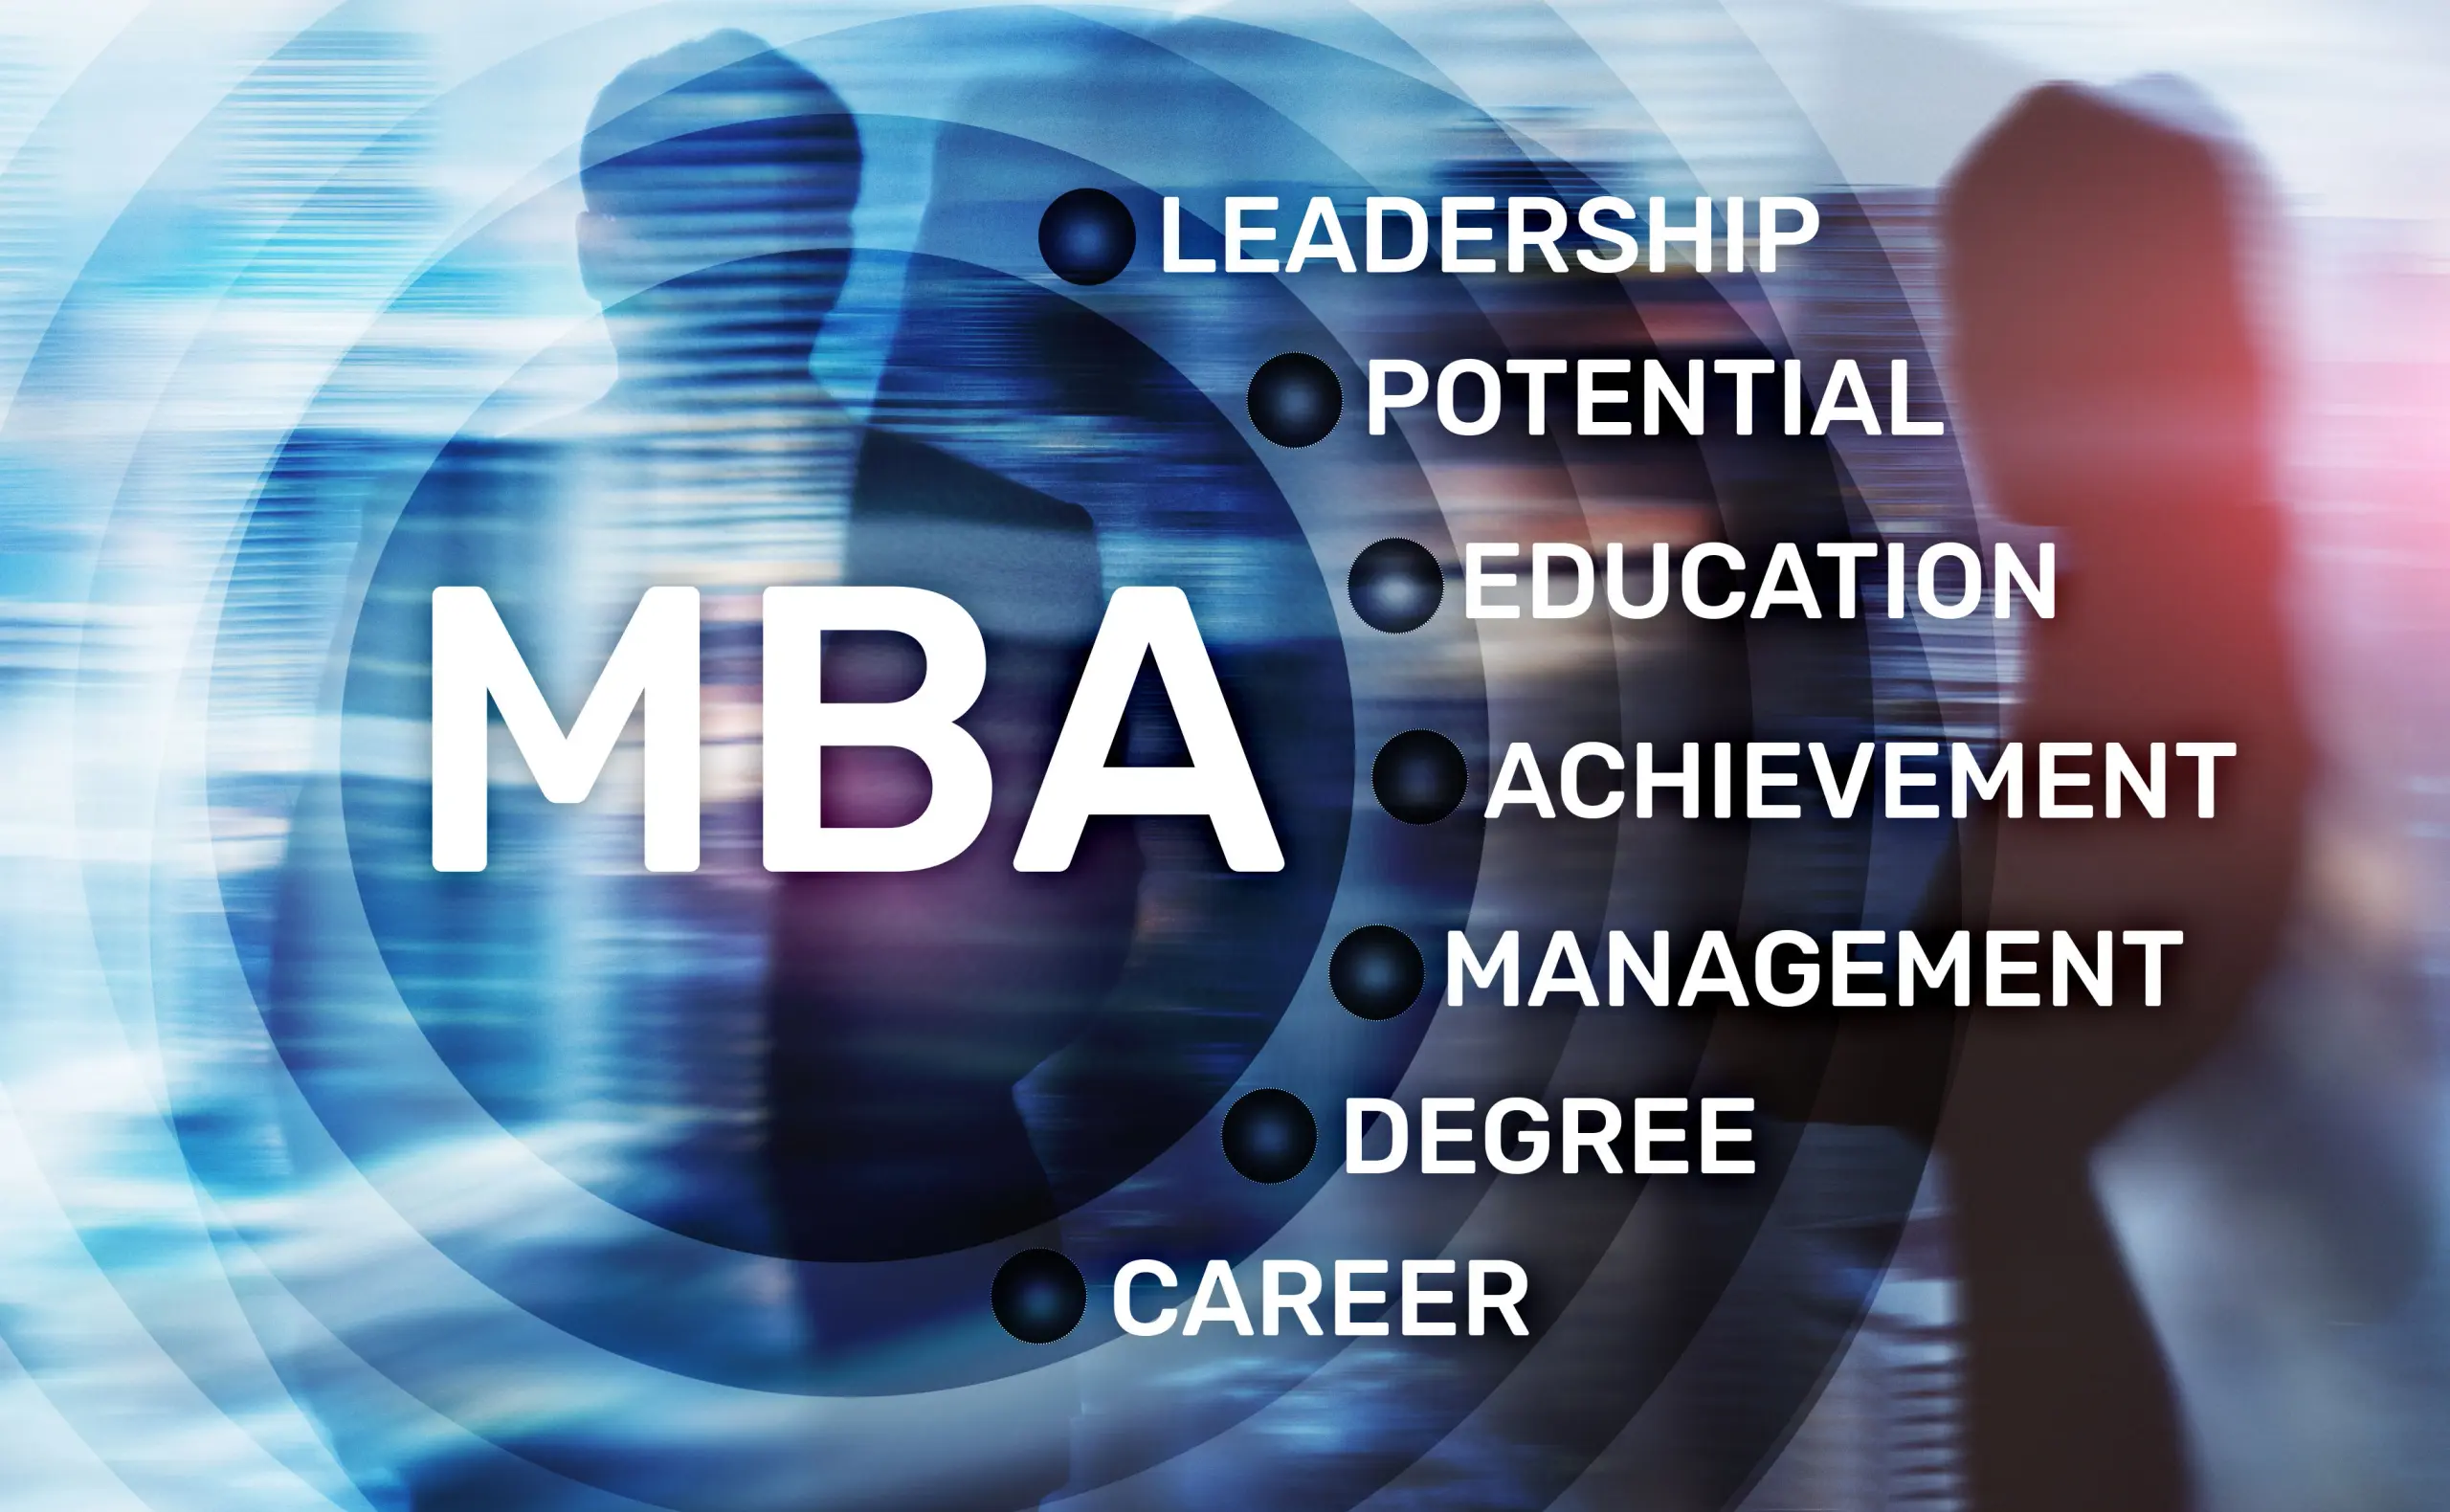 Ein MBA ist ein Garant für Leadership-Expertise und Management-Erfahrung. Der Degree wirkt als Karriere-Booster.